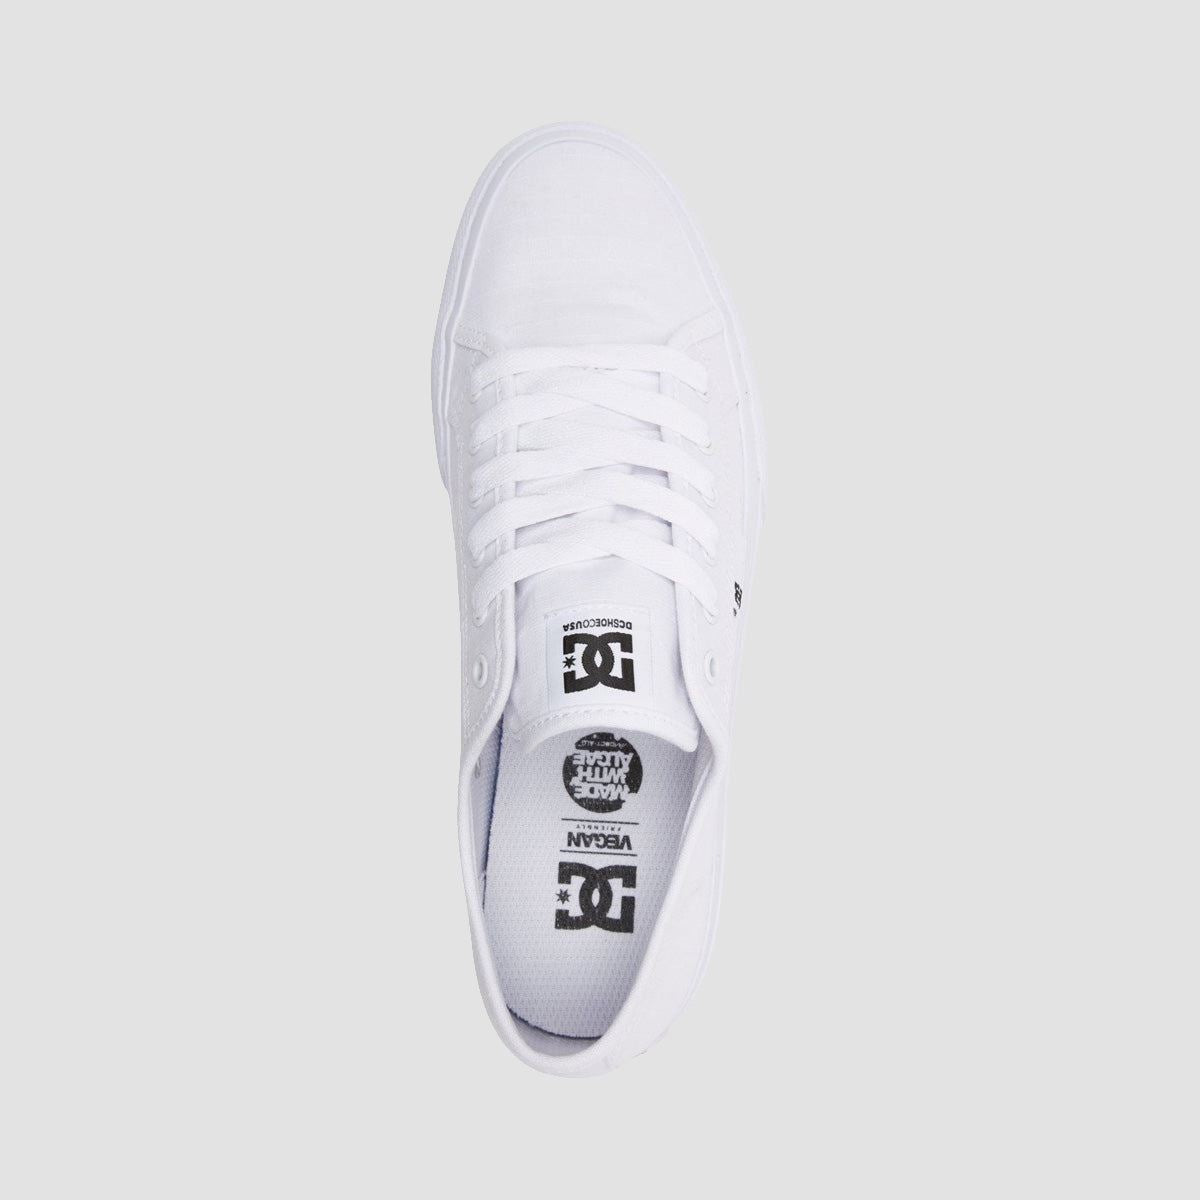 DC Manual TXSE Shoes - White/White